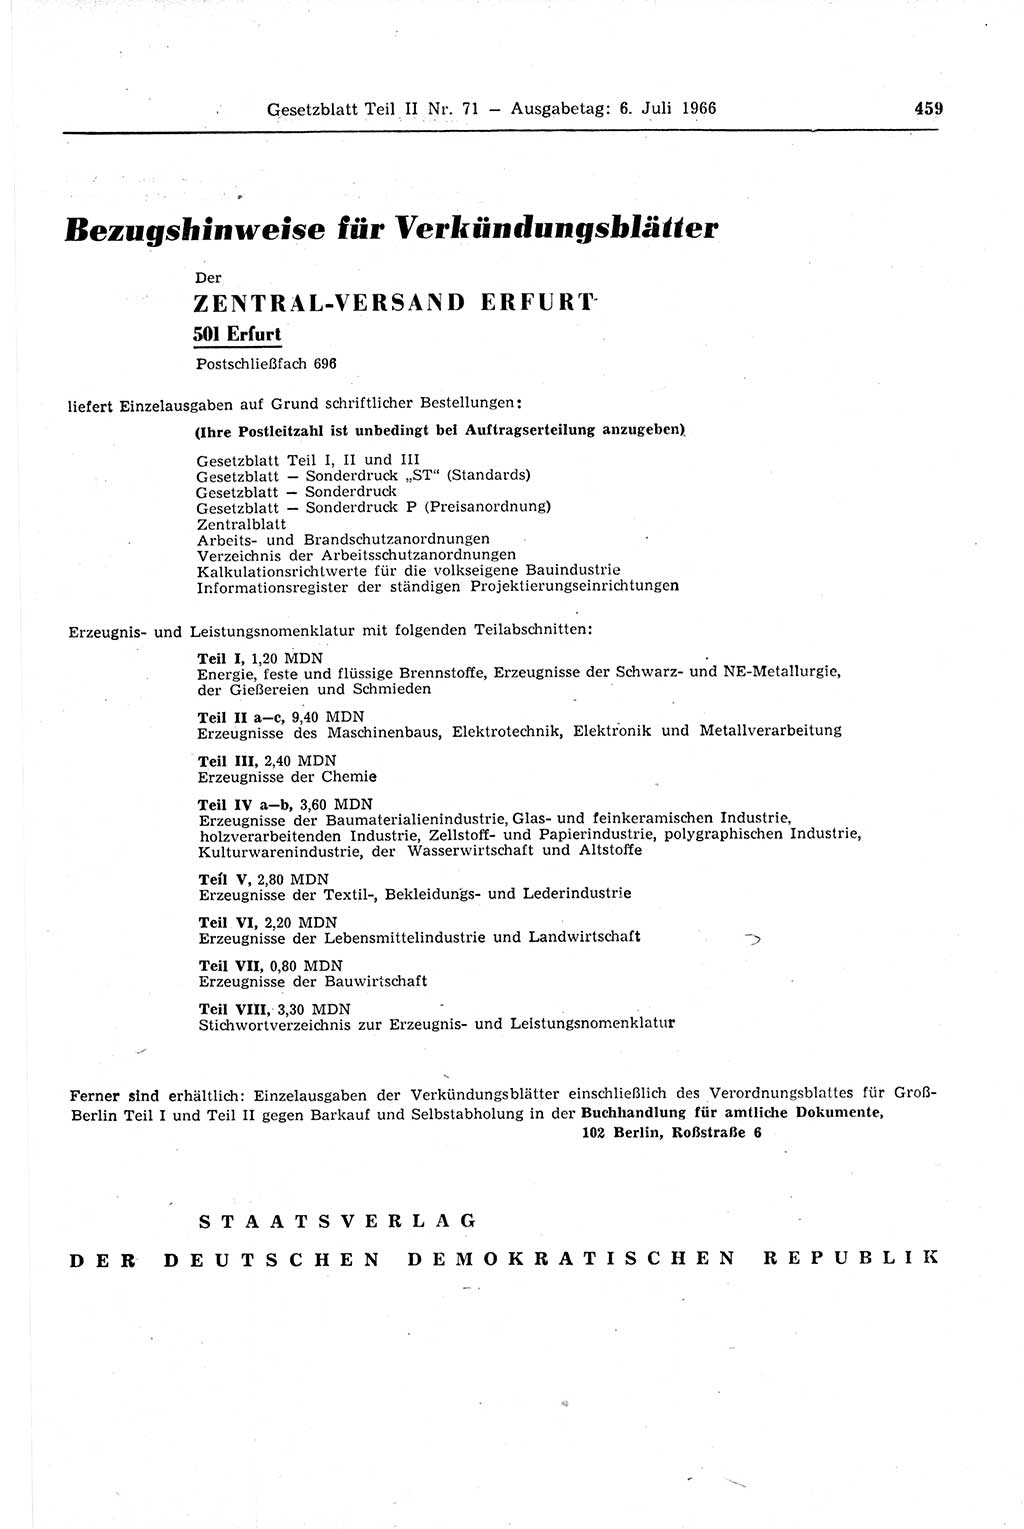 Gesetzblatt (GBl.) der Deutschen Demokratischen Republik (DDR) Teil ⅠⅠ 1966, Seite 459 (GBl. DDR ⅠⅠ 1966, S. 459)